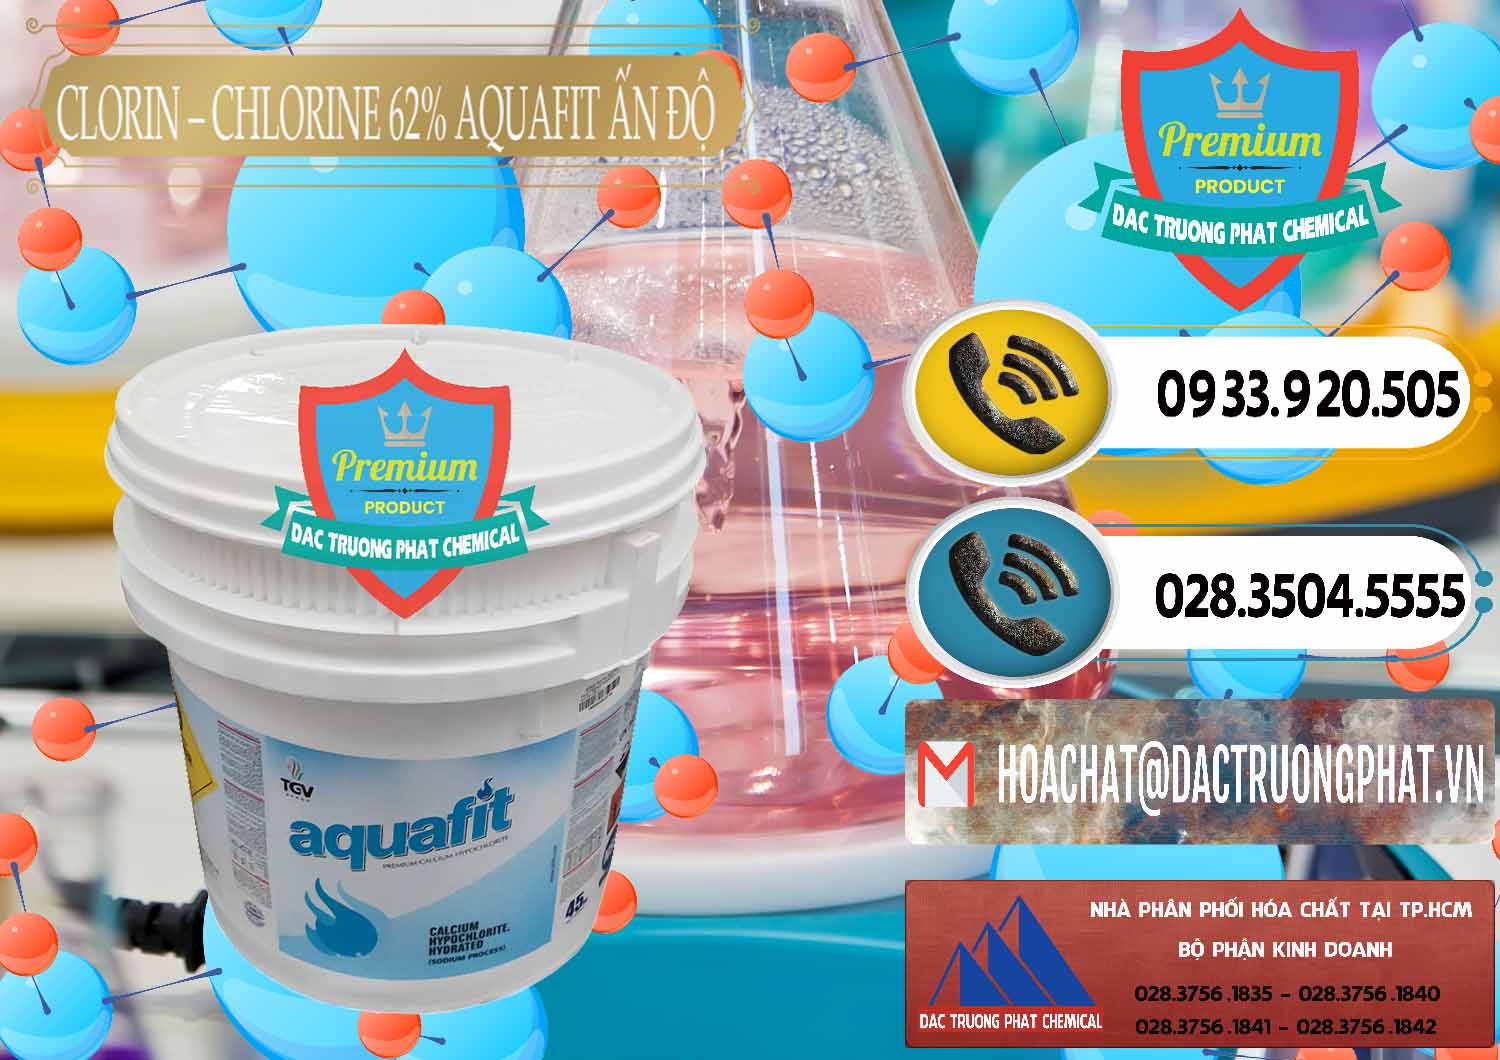 Nơi phân phối & bán Clorin - Chlorine 62% Aquafit Thùng Lùn Ấn Độ India - 0057 - Đơn vị cung cấp và bán hóa chất tại TP.HCM - hoachatdetnhuom.vn